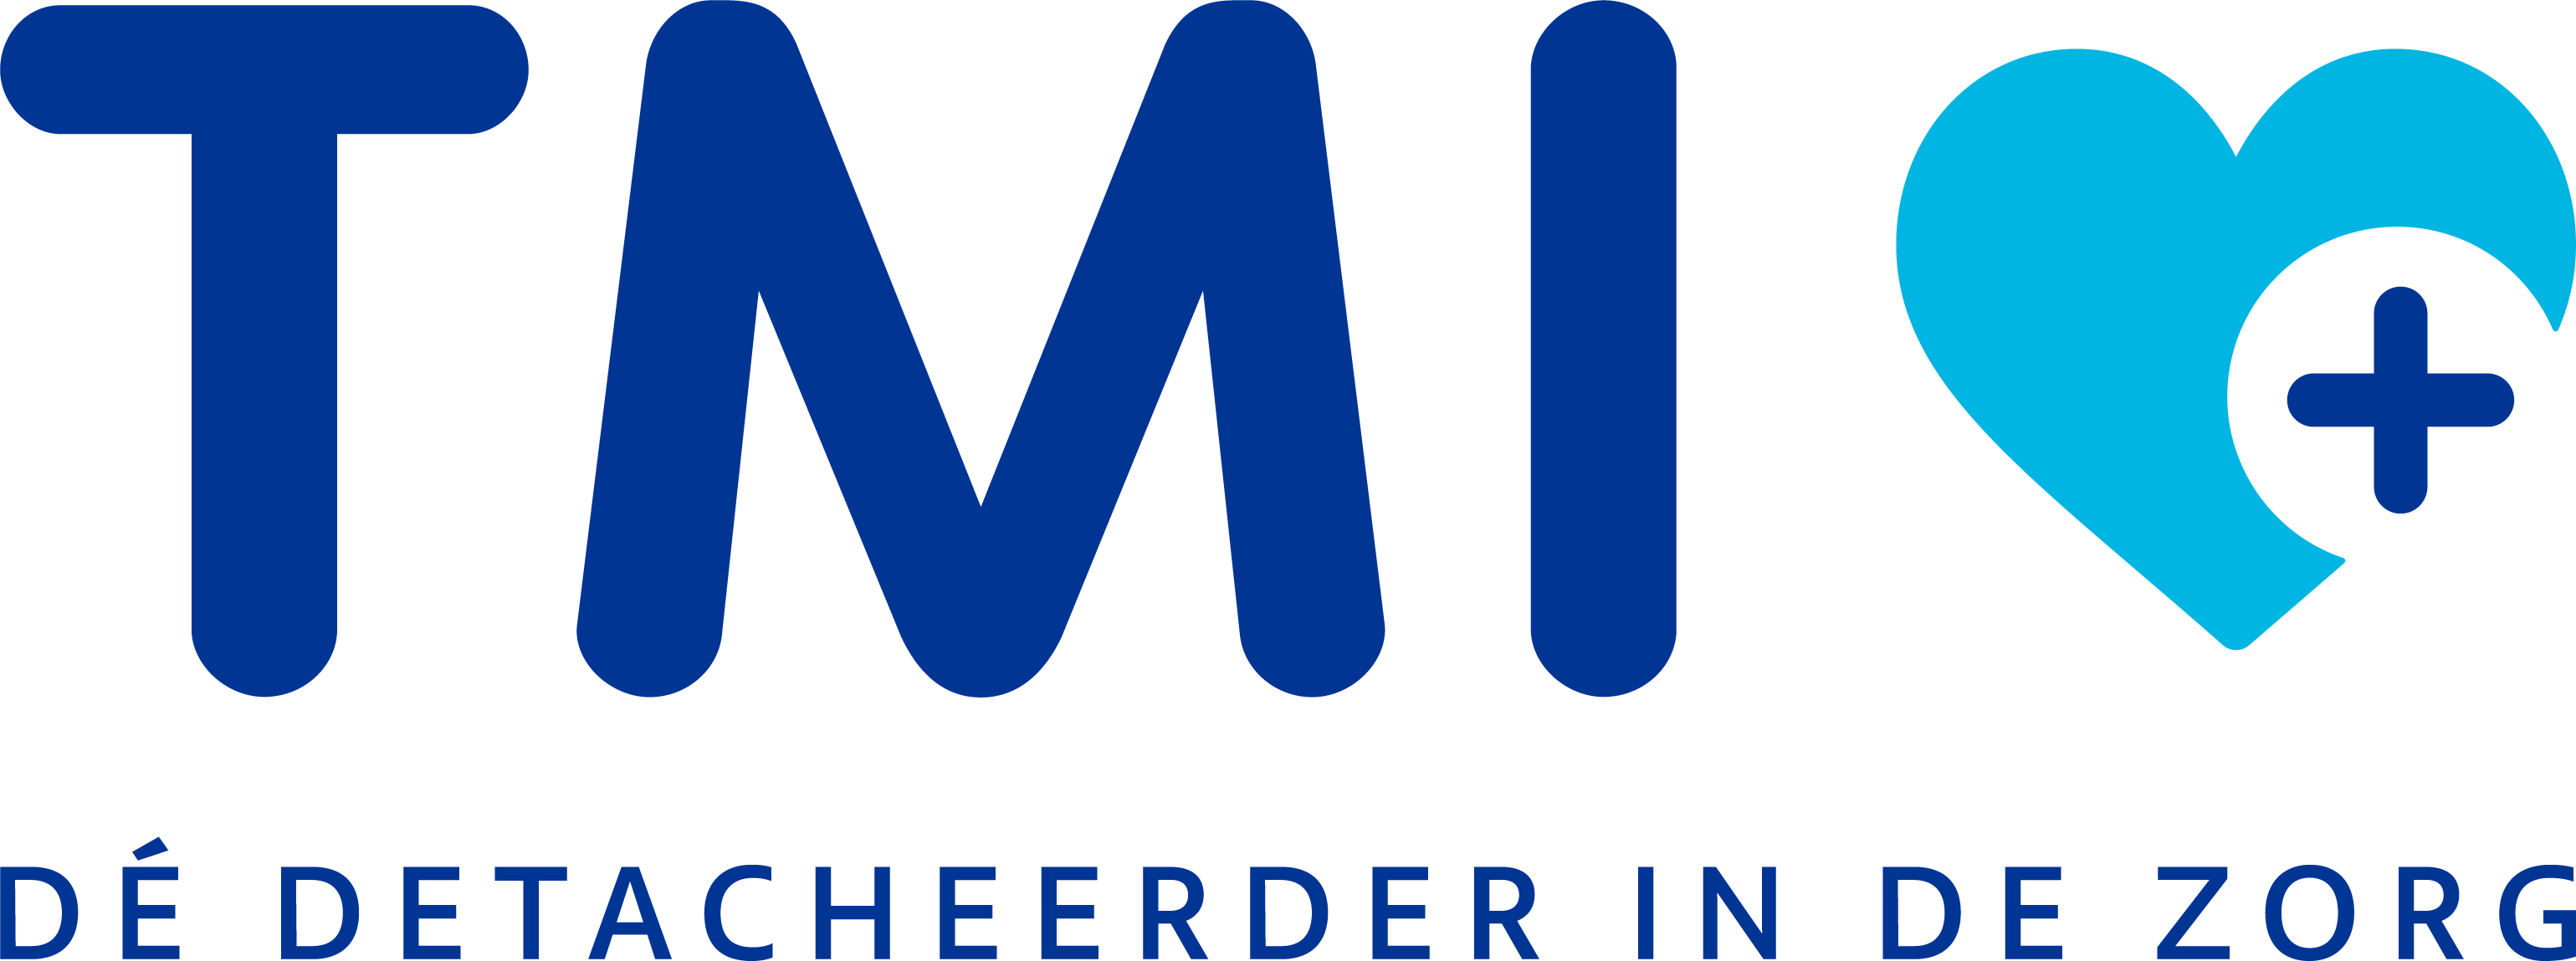 TMI logo